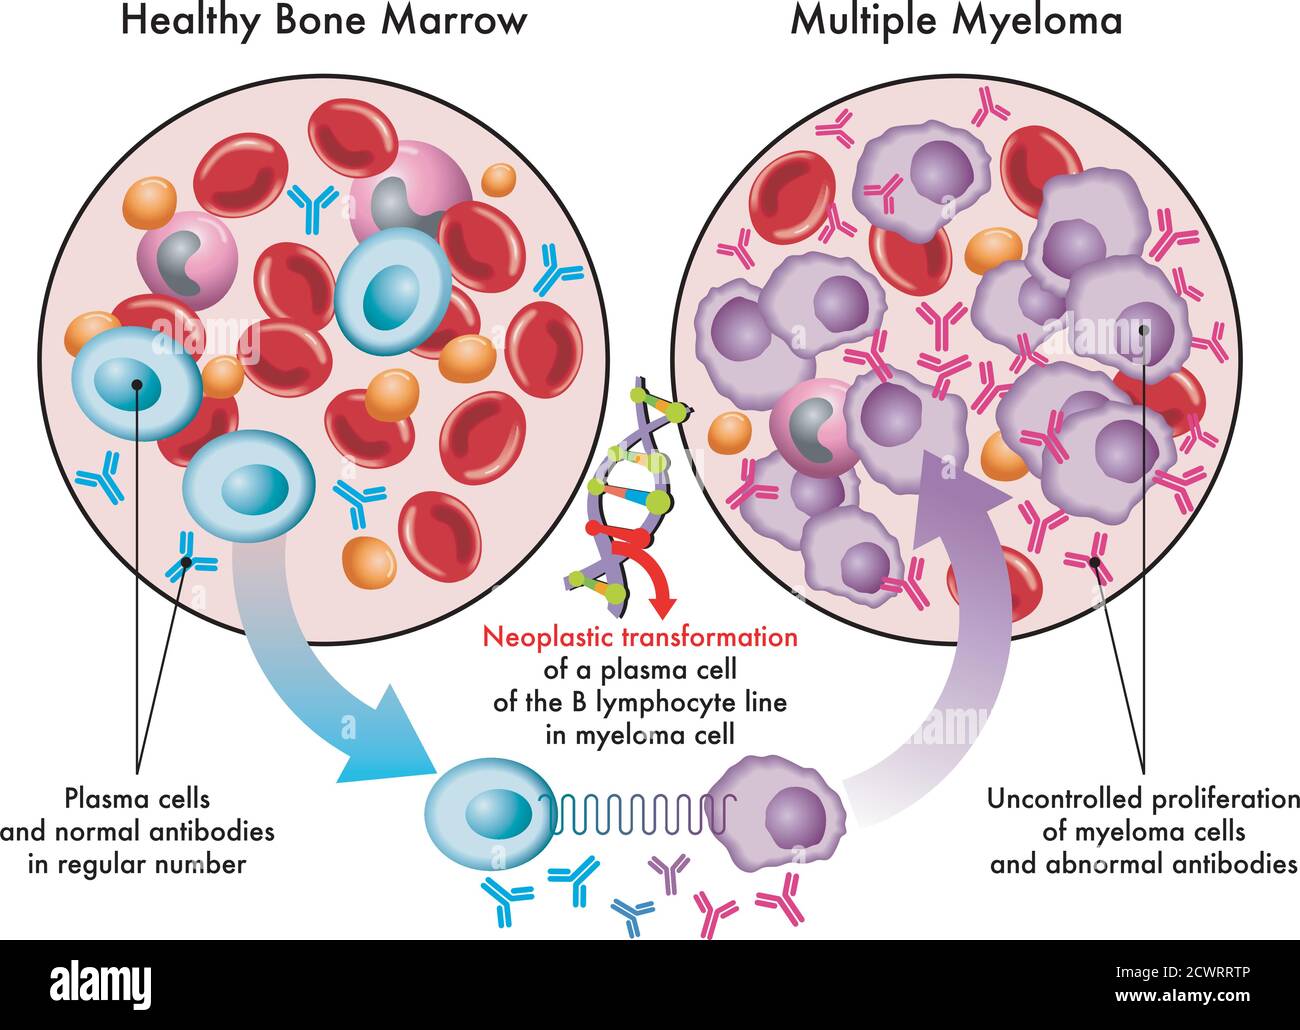 L'illustration médicale montre la transformation des cellules plasmatiques dans la moelle osseuse saine en cellules myélomes dans le myélome multiple, en raison de dommages à l'ADN. Illustration de Vecteur